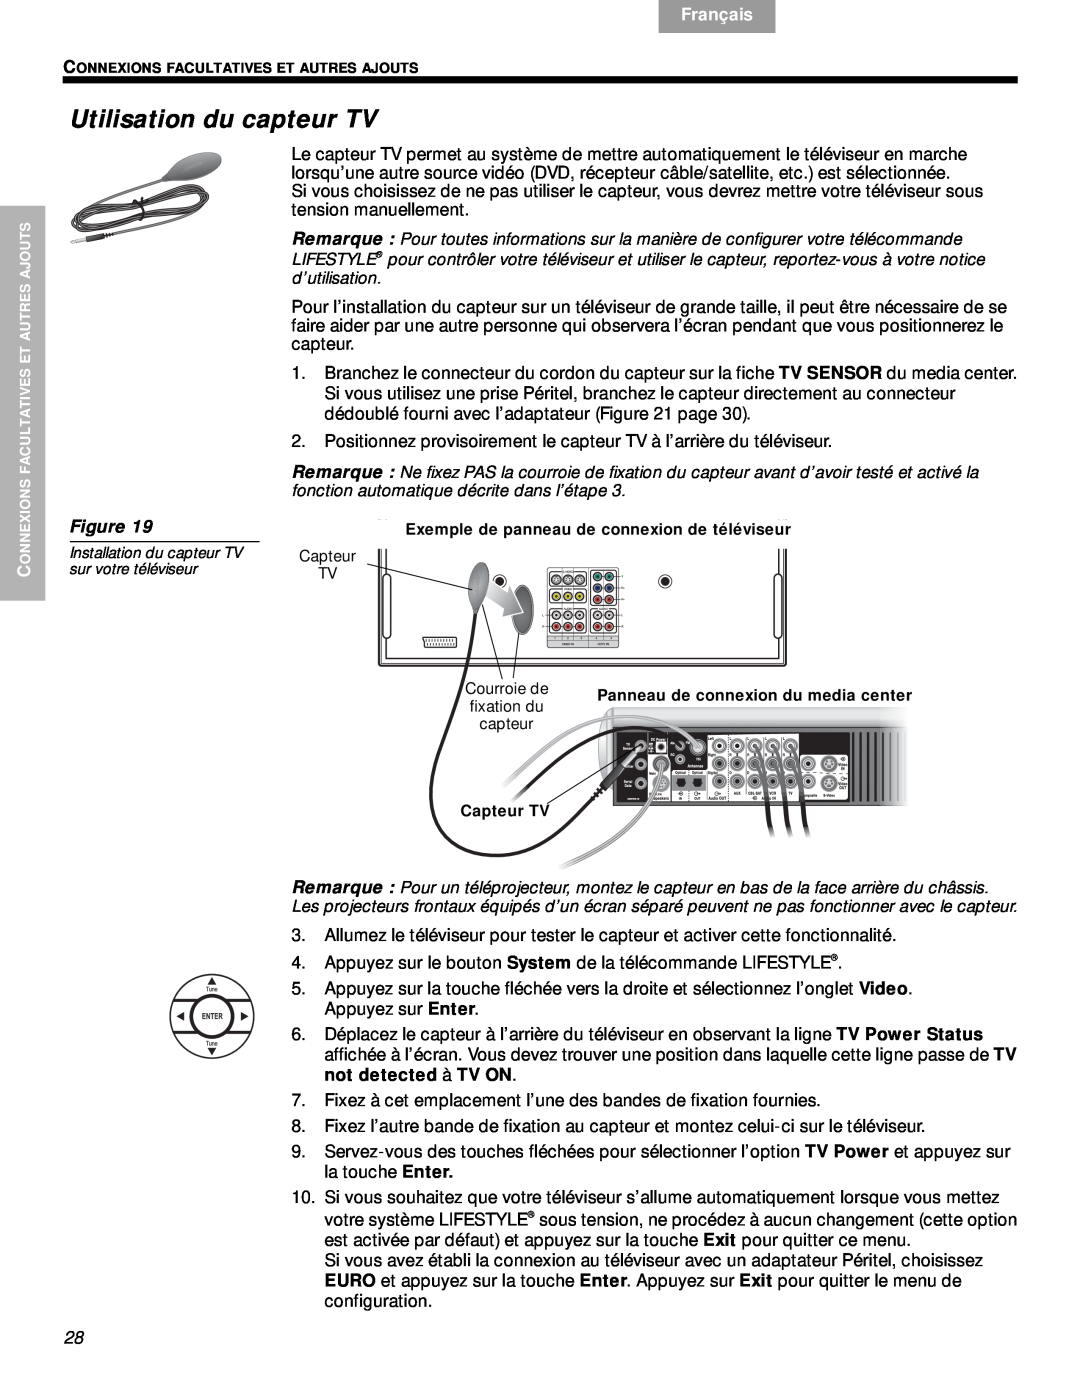 Bose VS-2 manual Utilisation du capteur TV, Svenska, Nederlands, Français, Español, English, Figure 